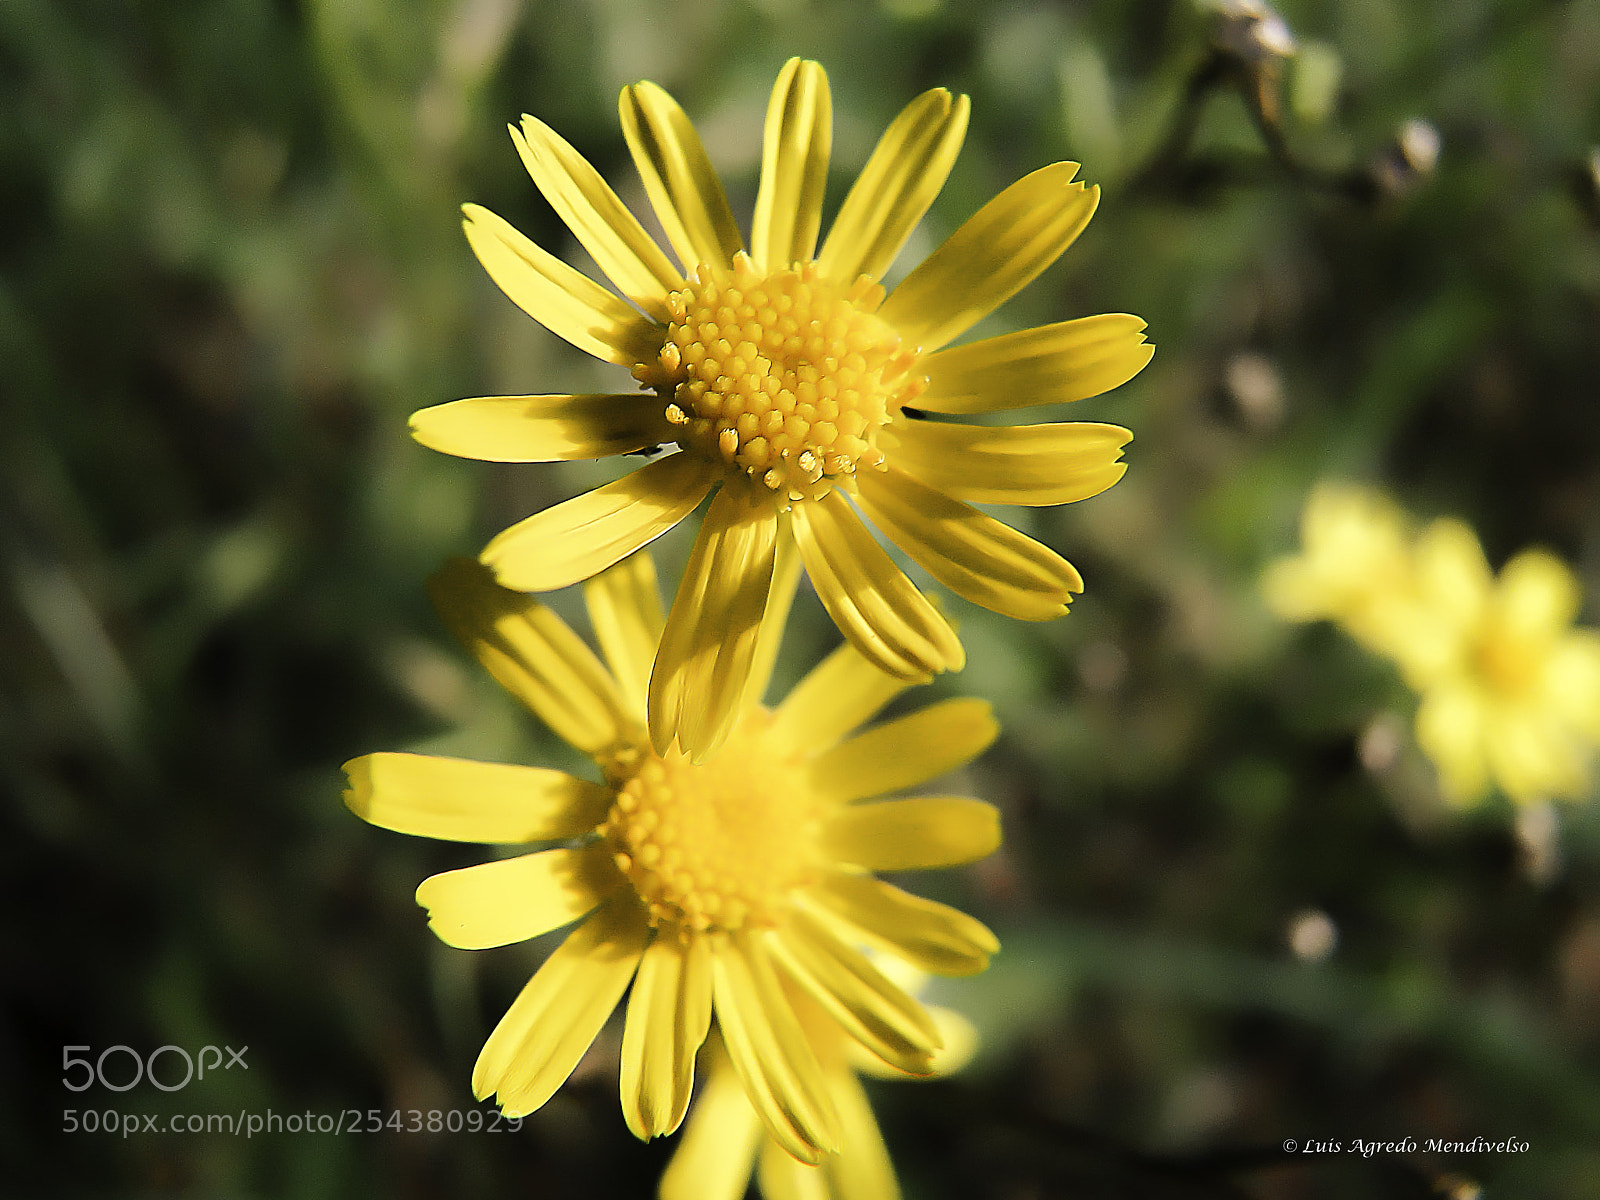 Sony Cyber-shot DSC-HX1 sample photo. Beautiful yellow daisy flowers photography